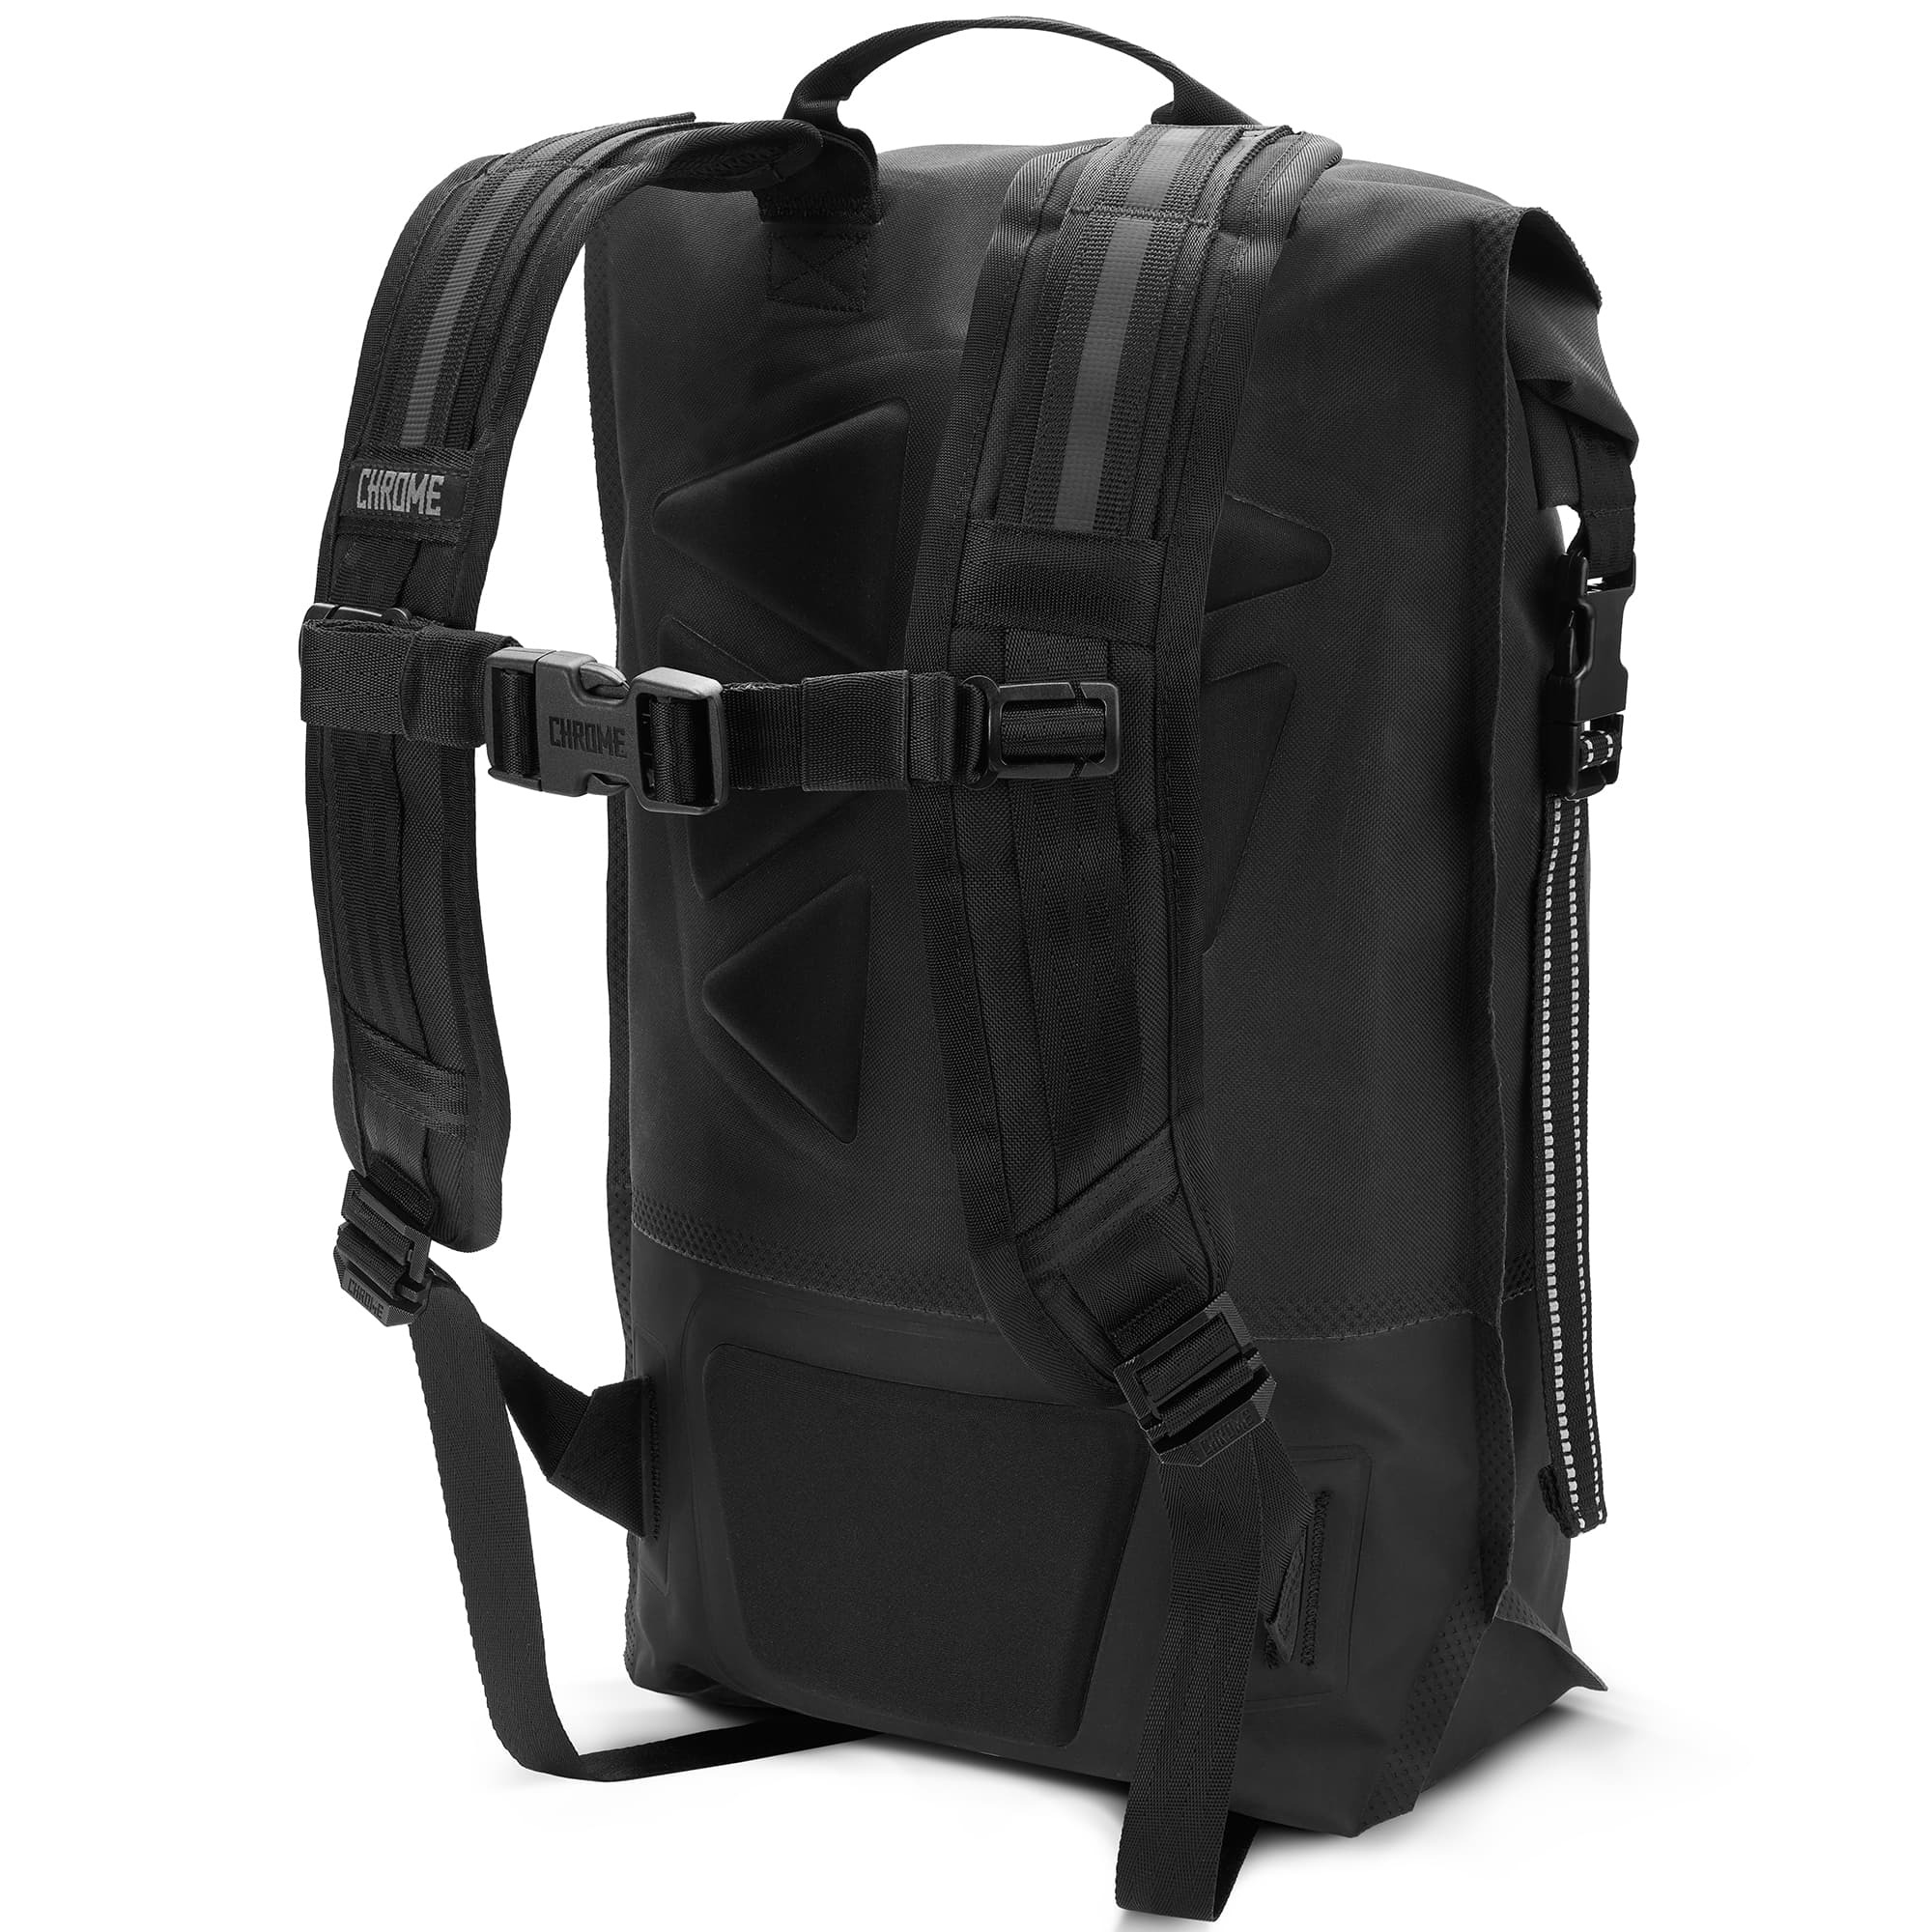 Waterproof 20L backpack in black harness detail #color_black